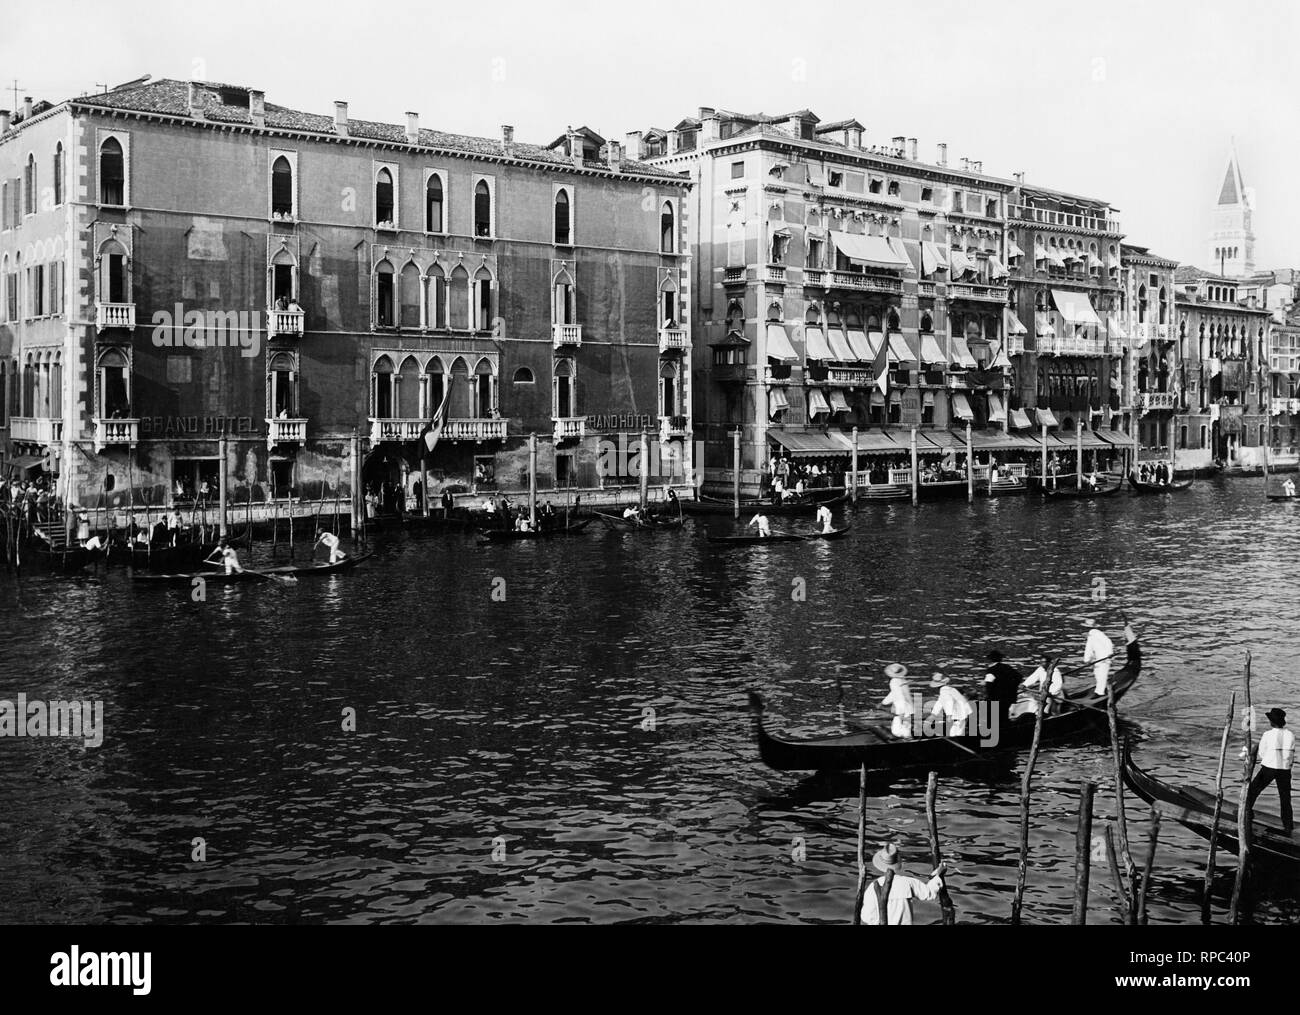 royal regatta in front of the grand hotel, venice 1910-20 Stock Photo